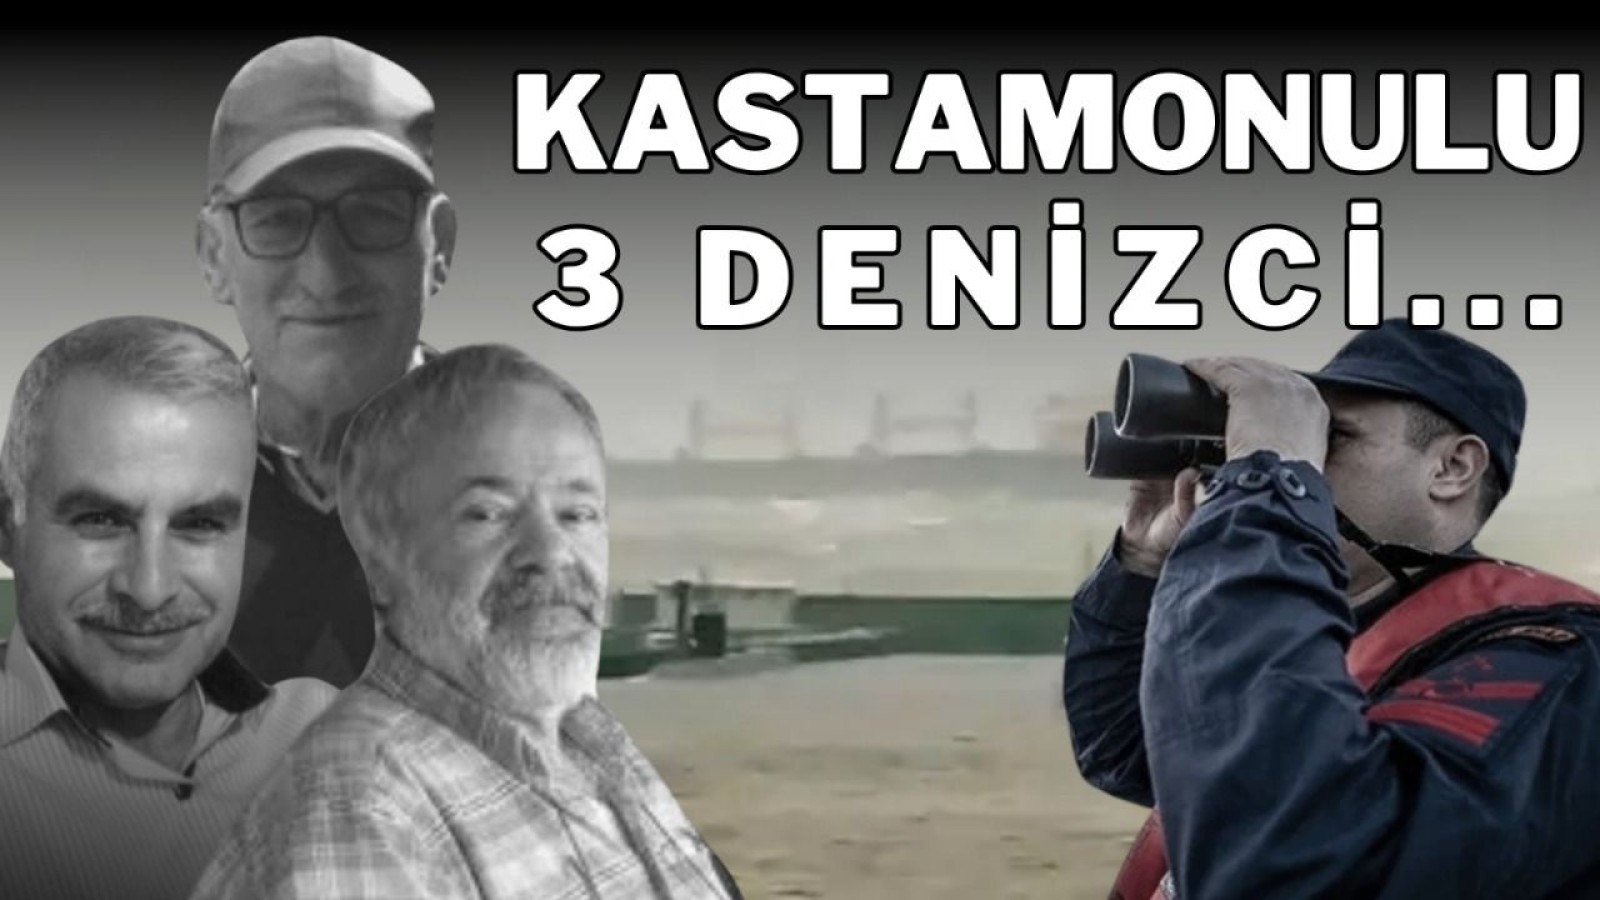 21 kayıp işçiden 3'ü Kastamonulu...;